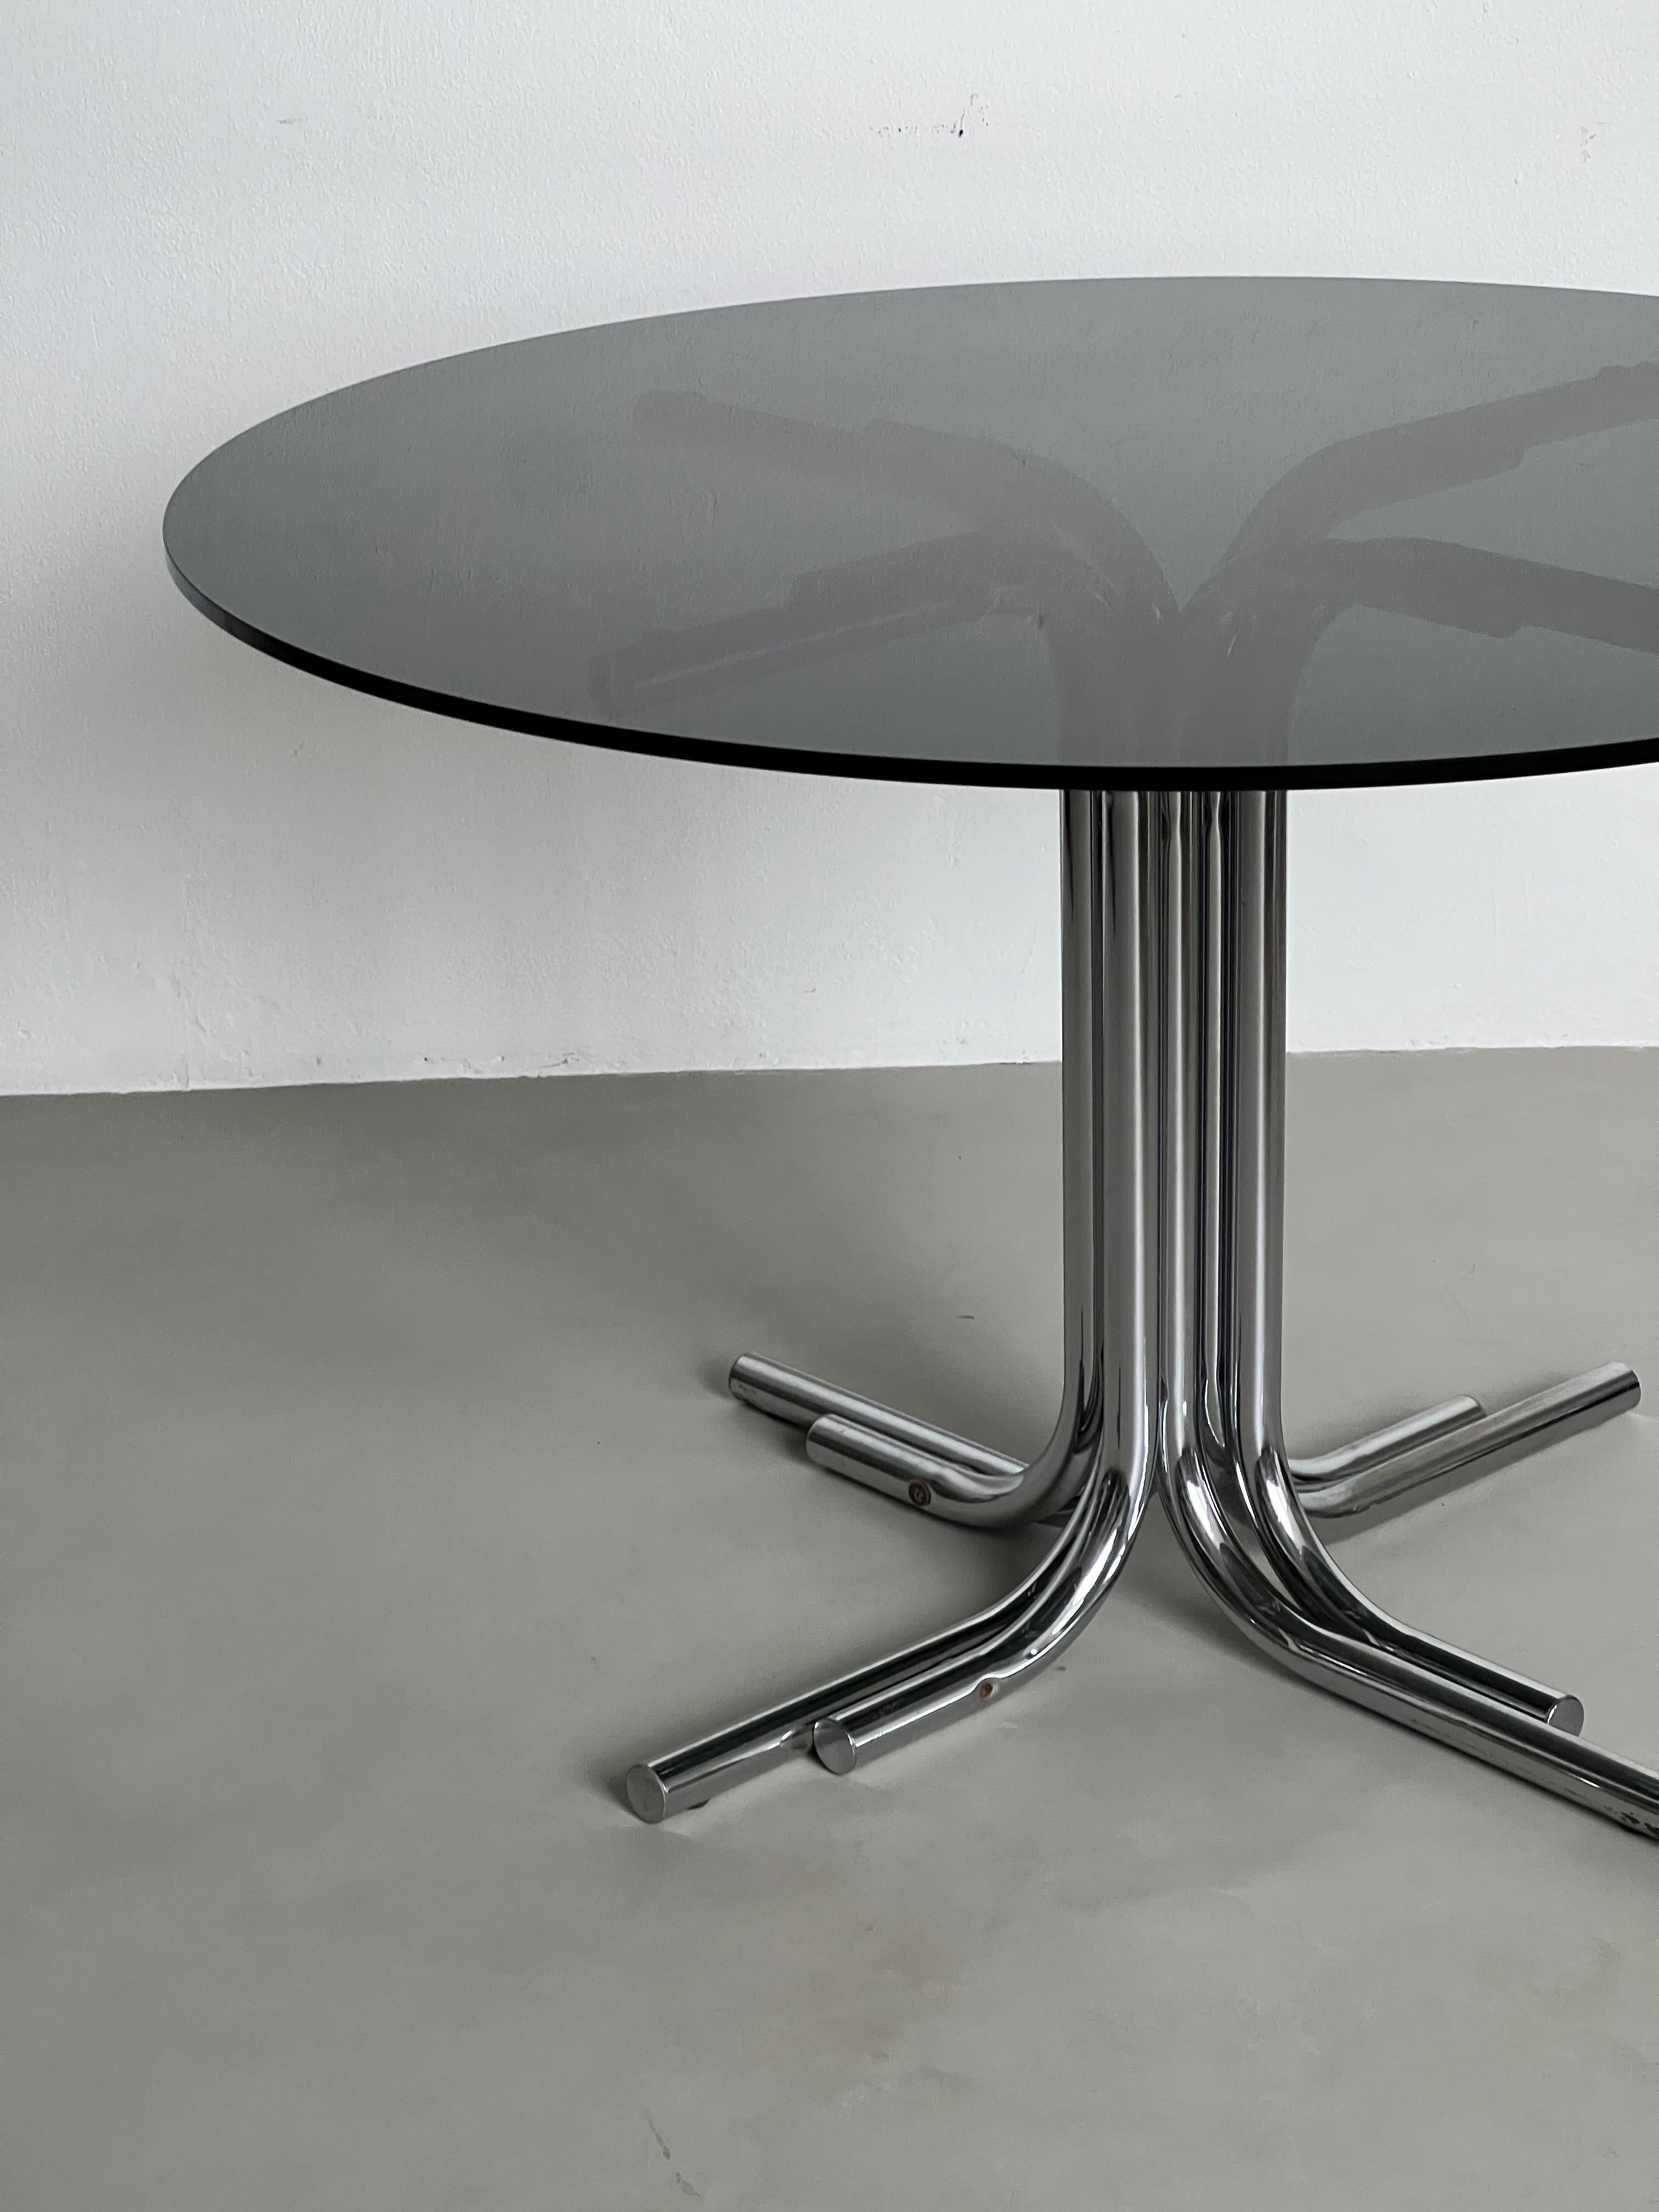 Nous vous proposons une table de salle à manger Space and AGE étonnante et intemporelle, avec des pieds tubulaires en métal chromé et un plateau rond en verre fumé à bord quadrillé. Conçu et fabriqué très probablement dans les années soixante-dix,